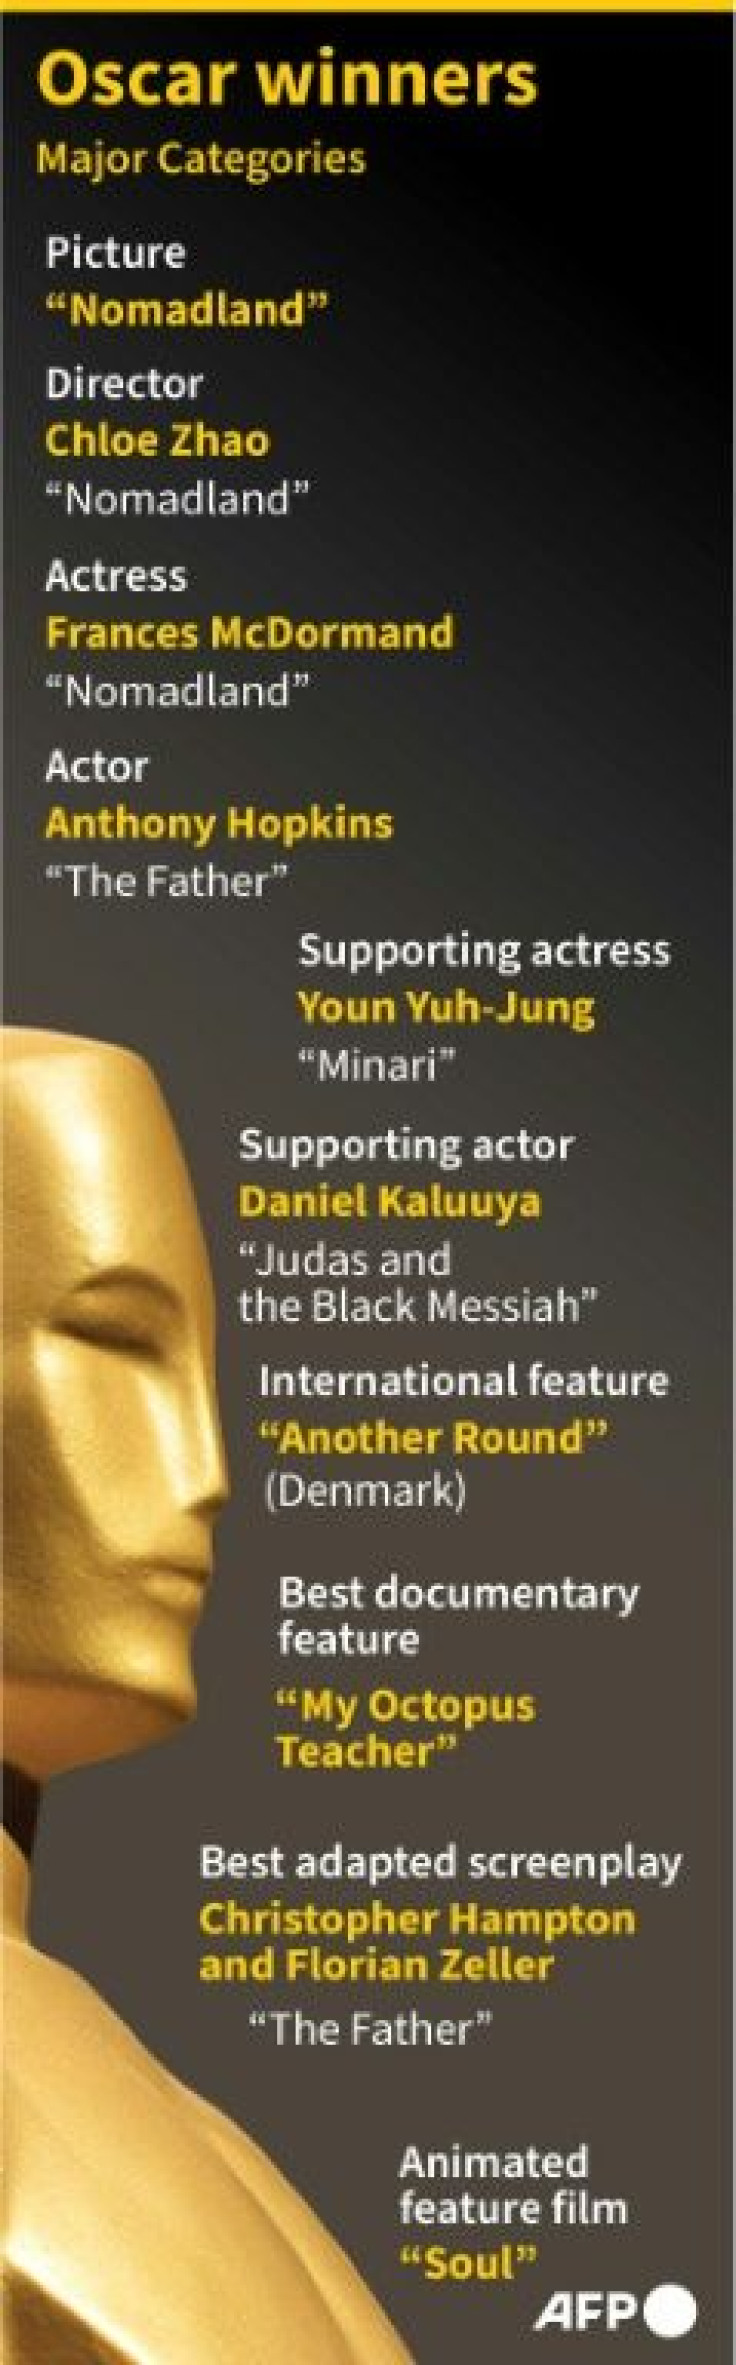 Oscar winners in the major categories